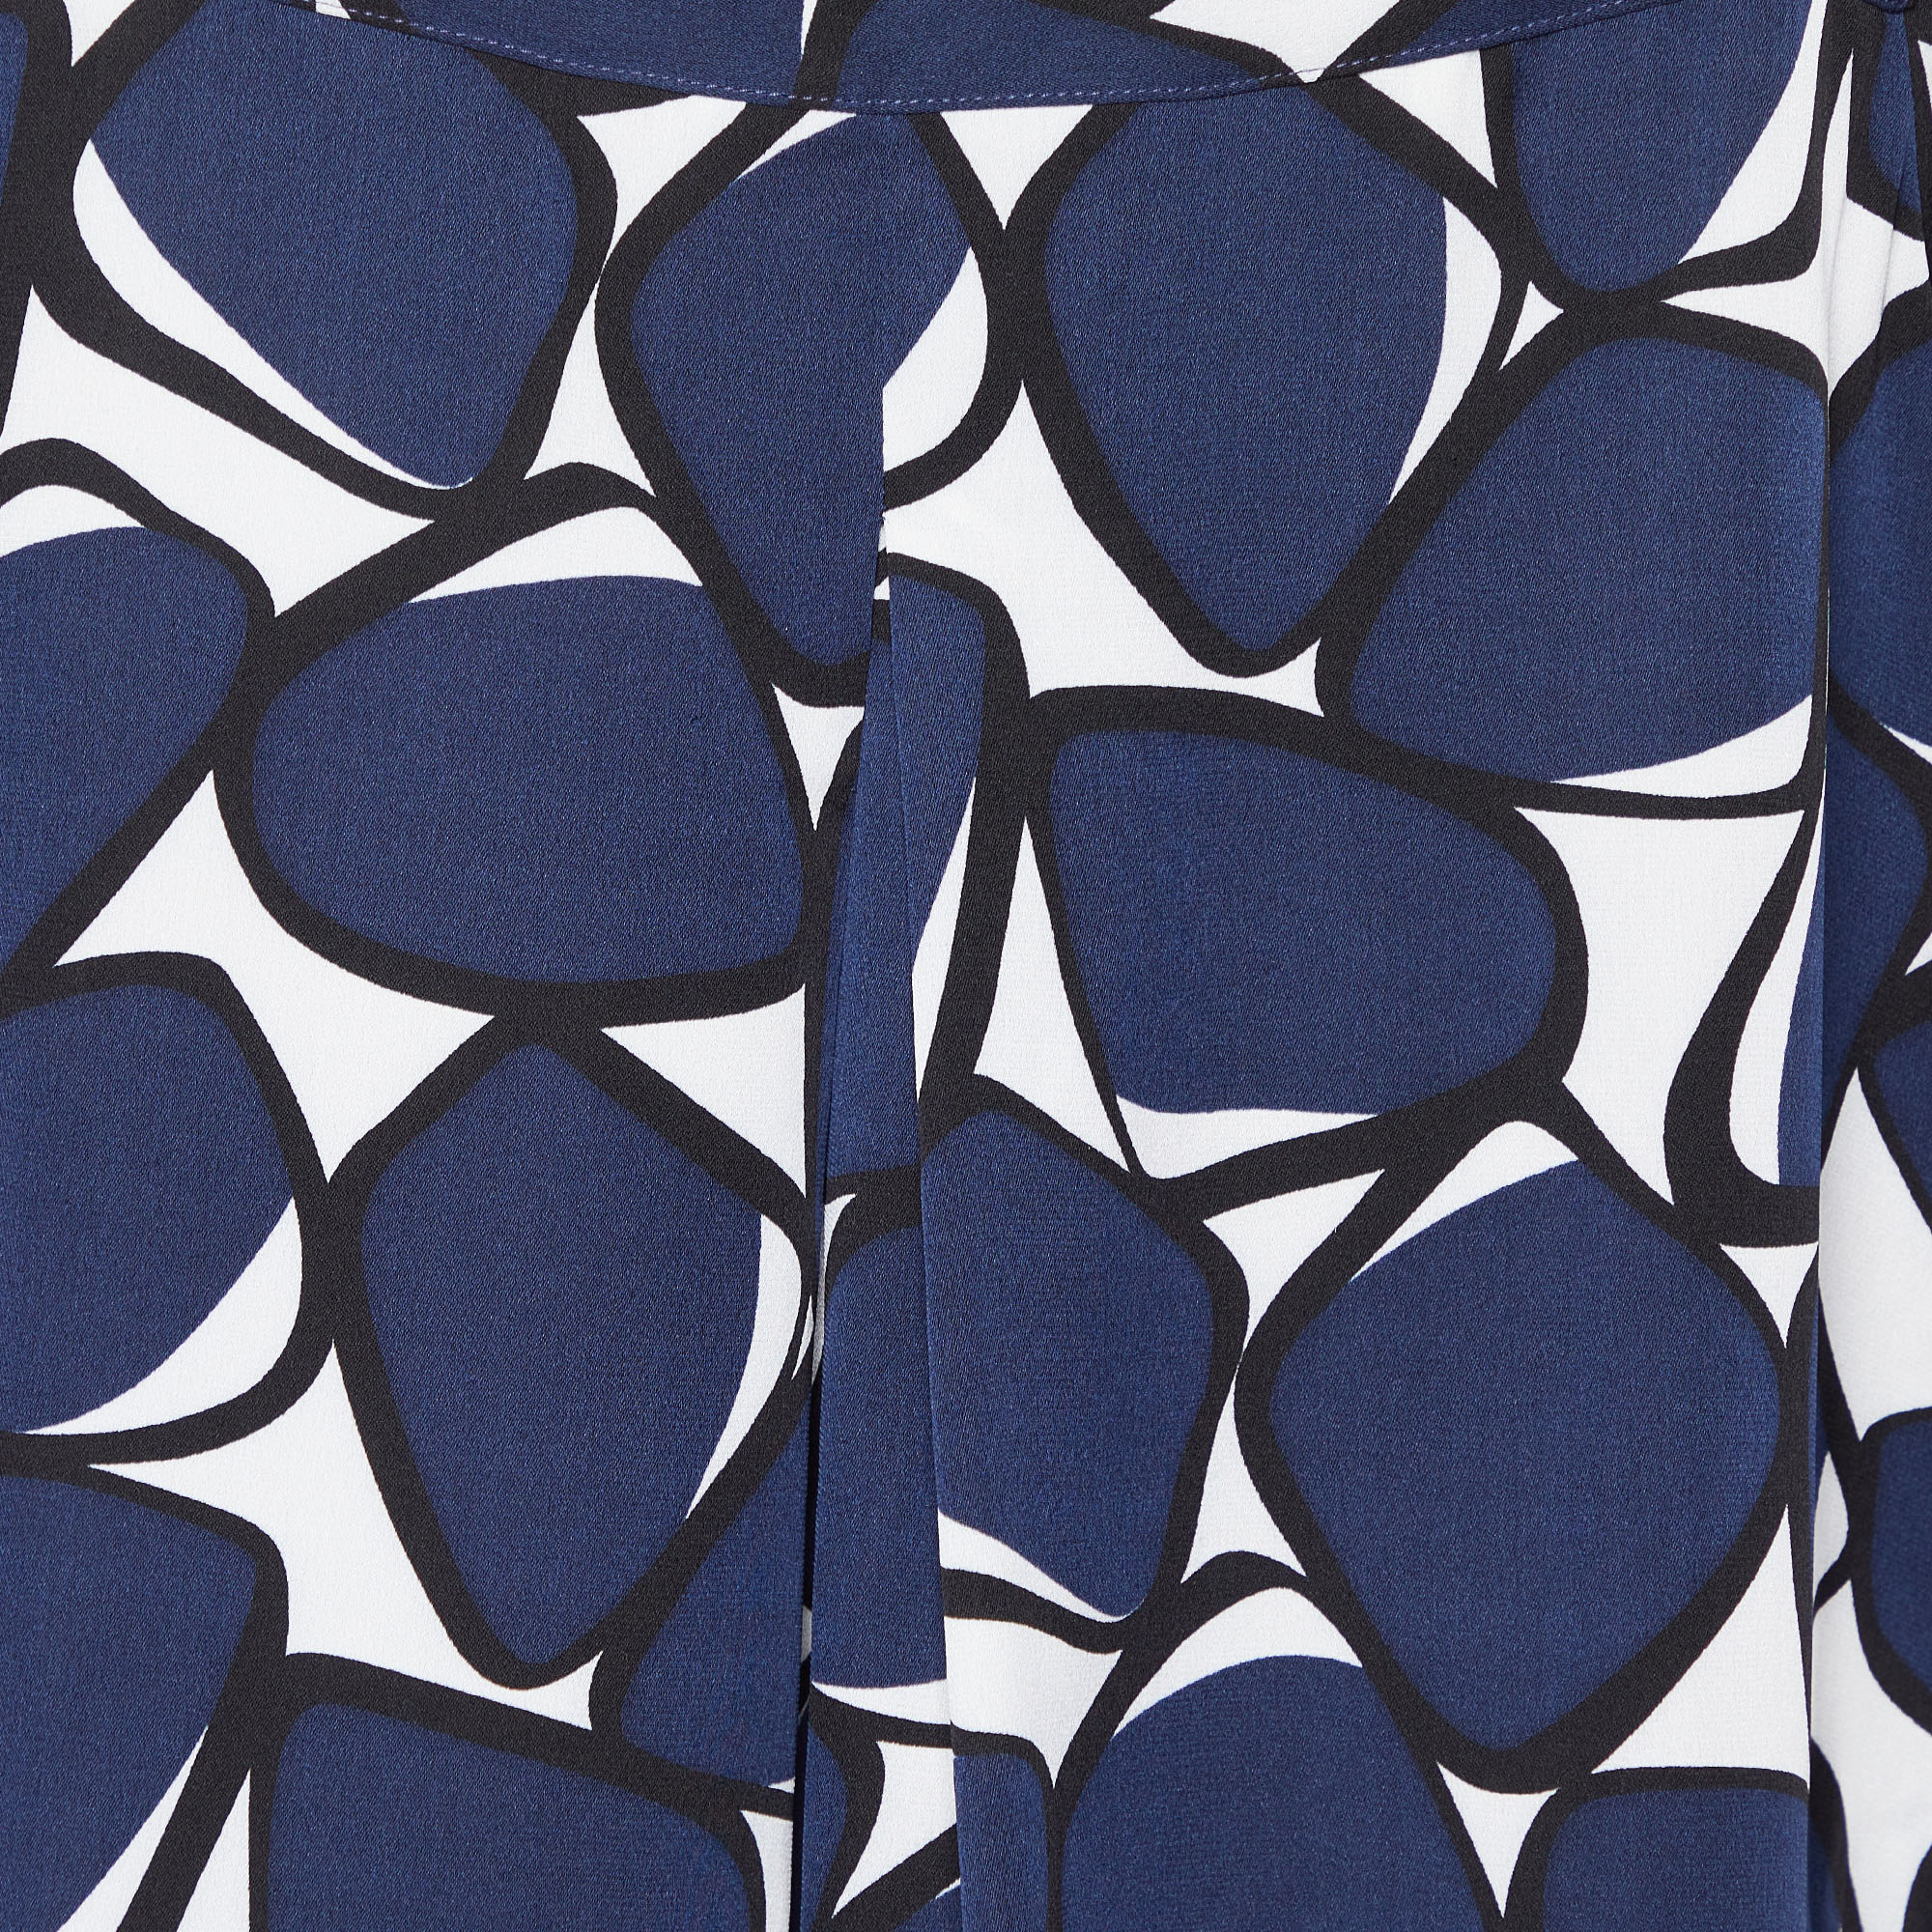 Diane Von Furstenberg Navy Blue Printed Silk Top L